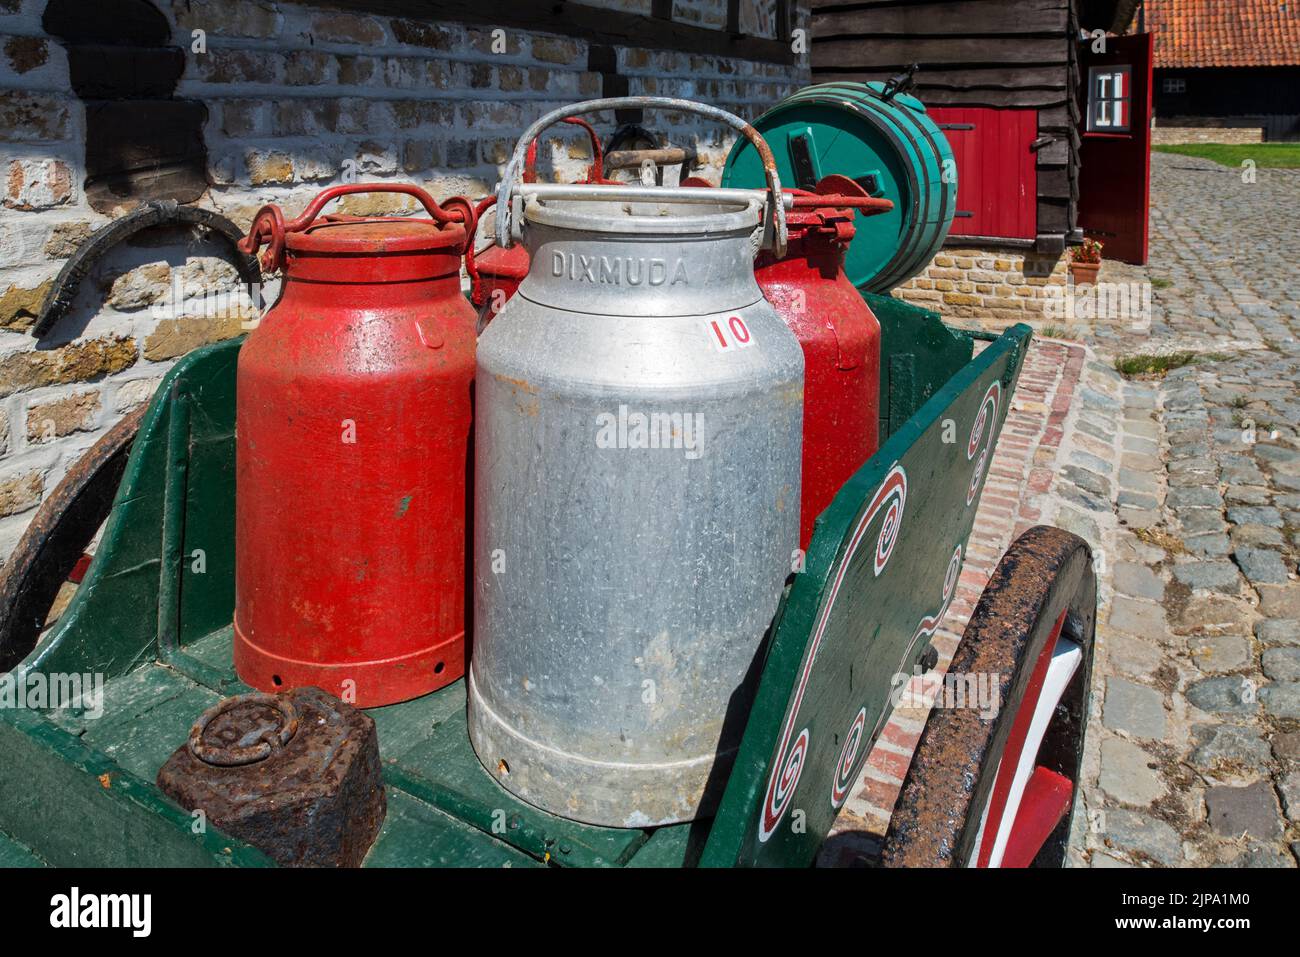 Ancienne voiturette chargée de vieux cannes à lait en métal / boîtes à lait au musée en plein air Bachten de Kupe en été, Izenberge, Flandre Occidentale, Belgique Banque D'Images